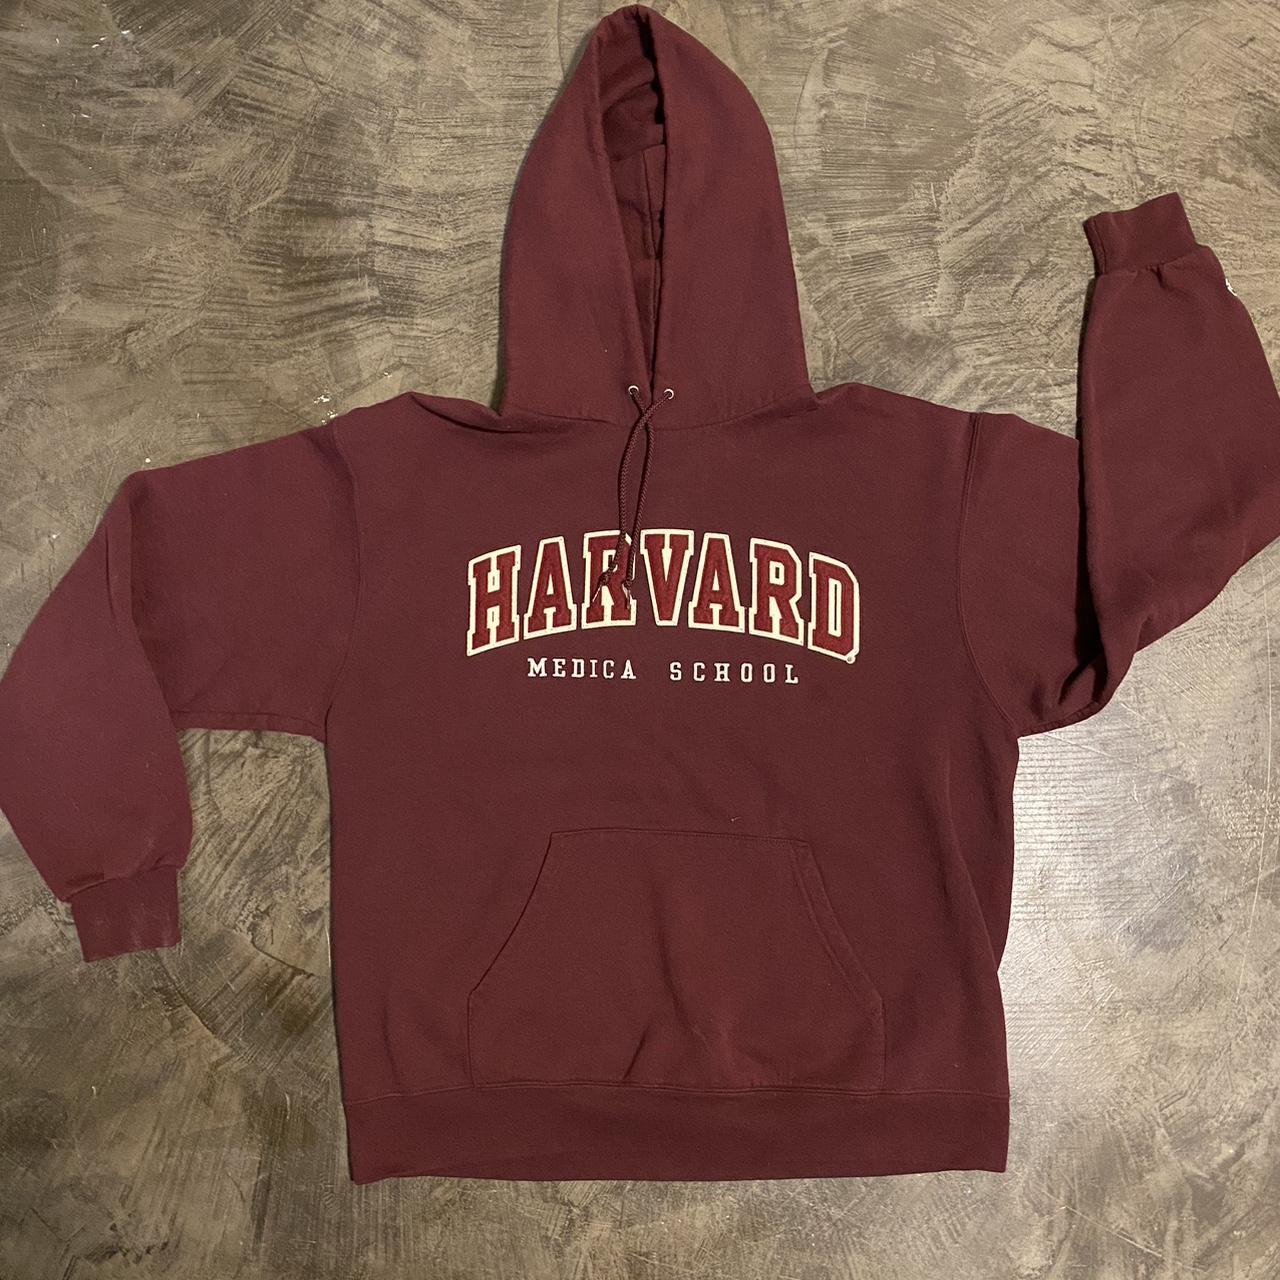 Sick Vintage Champion Harvard Hoodie with sweat... - Depop